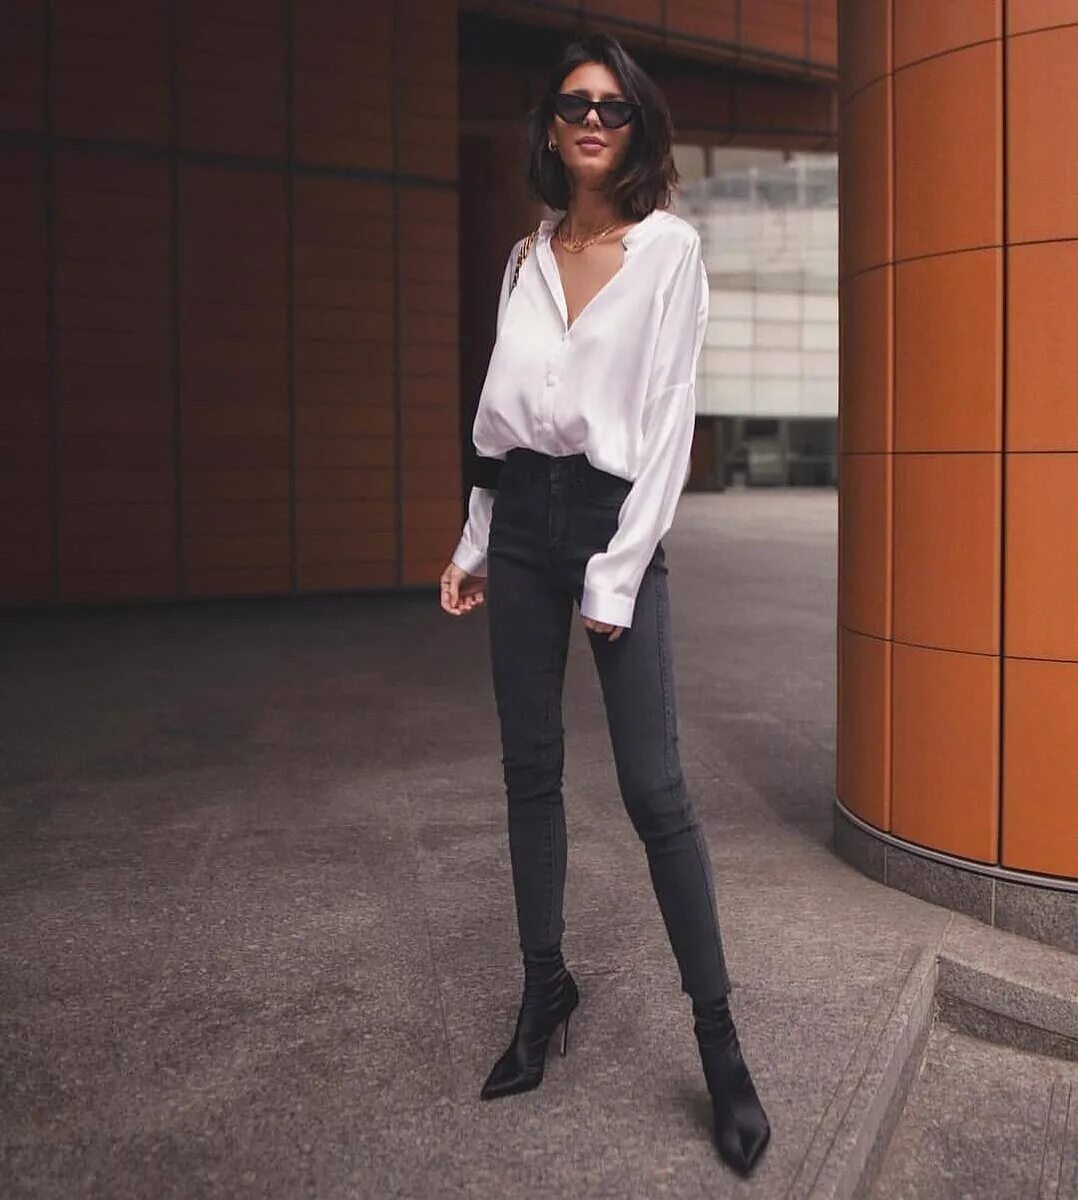 Джули Саринана стиль 2020. Джинсы с черной блузкой. Черная блузка с джинсами. Образы с белой рубашкой. Черные джинсы с белой рубашкой